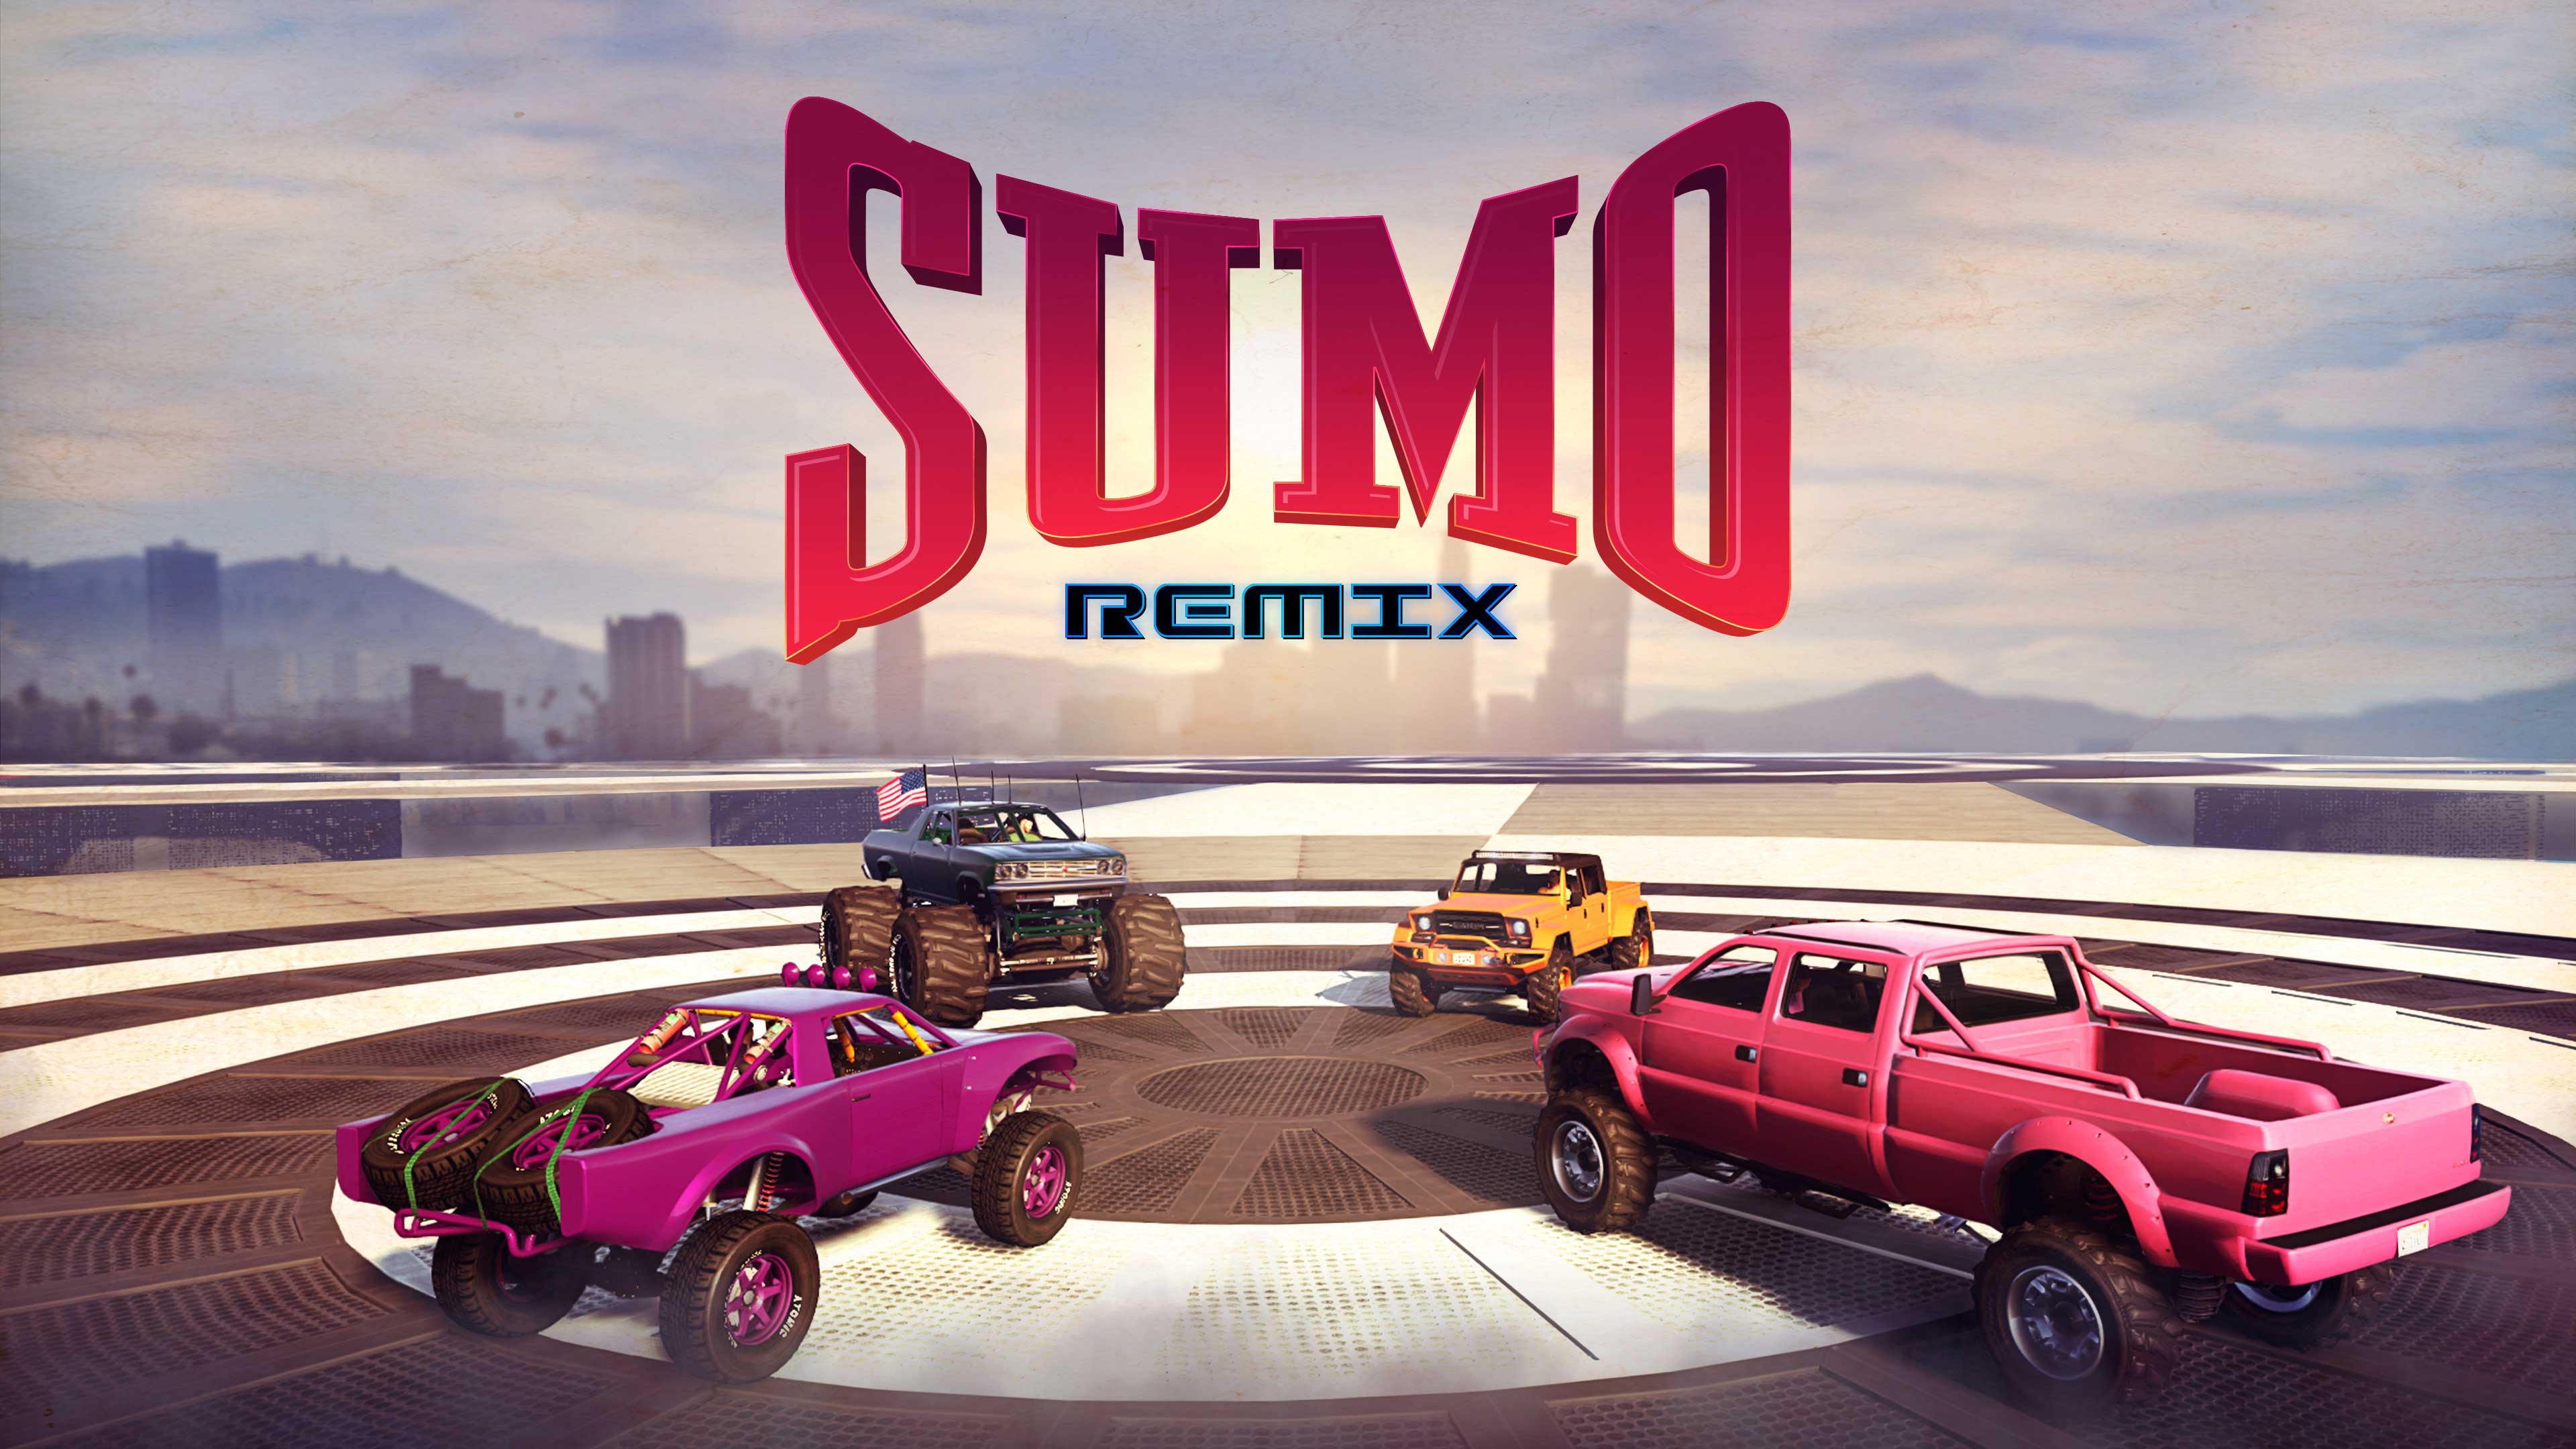 Pôster de Sumô (Remix) com quatro carros off-road.